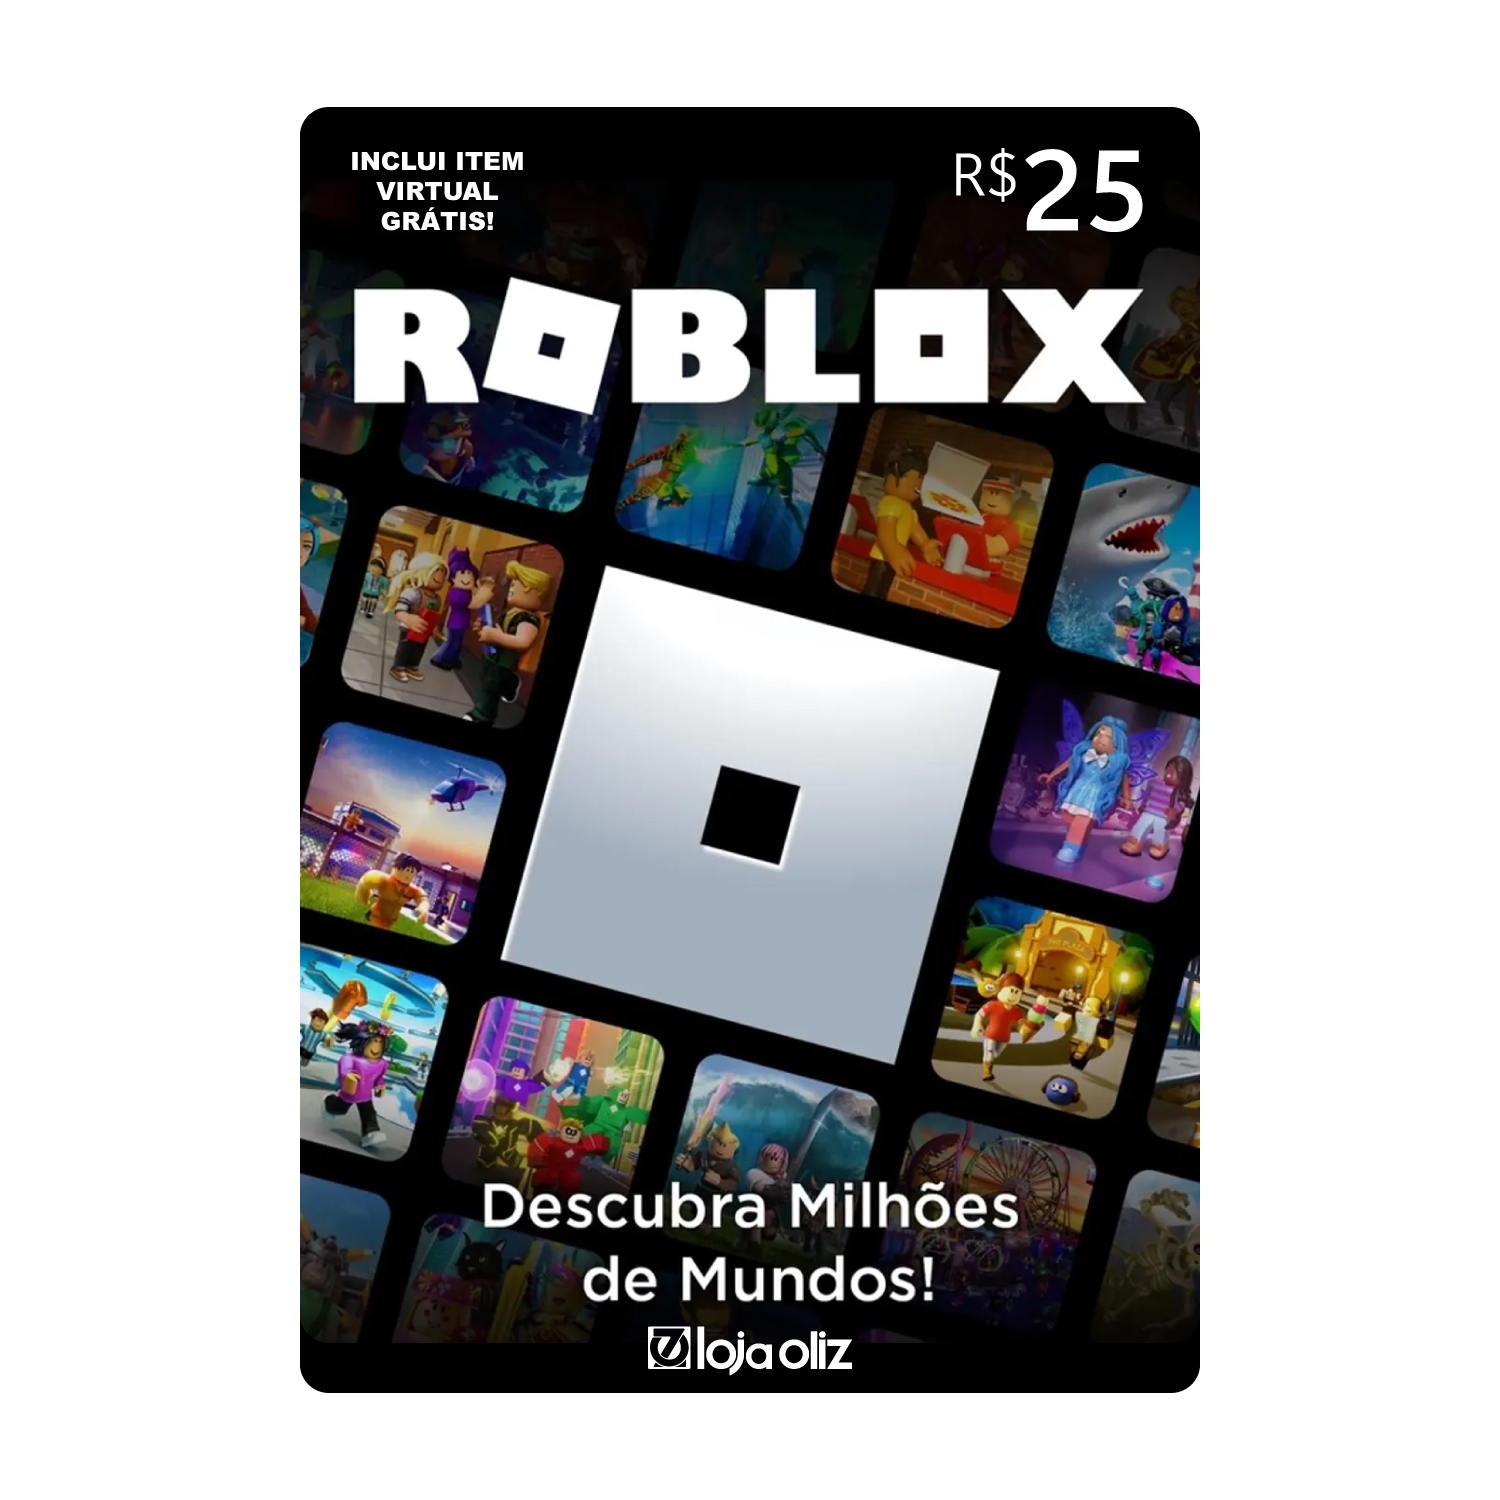 Avaliações sobre Roblox  Leia as avaliações sobre o Atendimento ao Cliente  de www.roblox.com